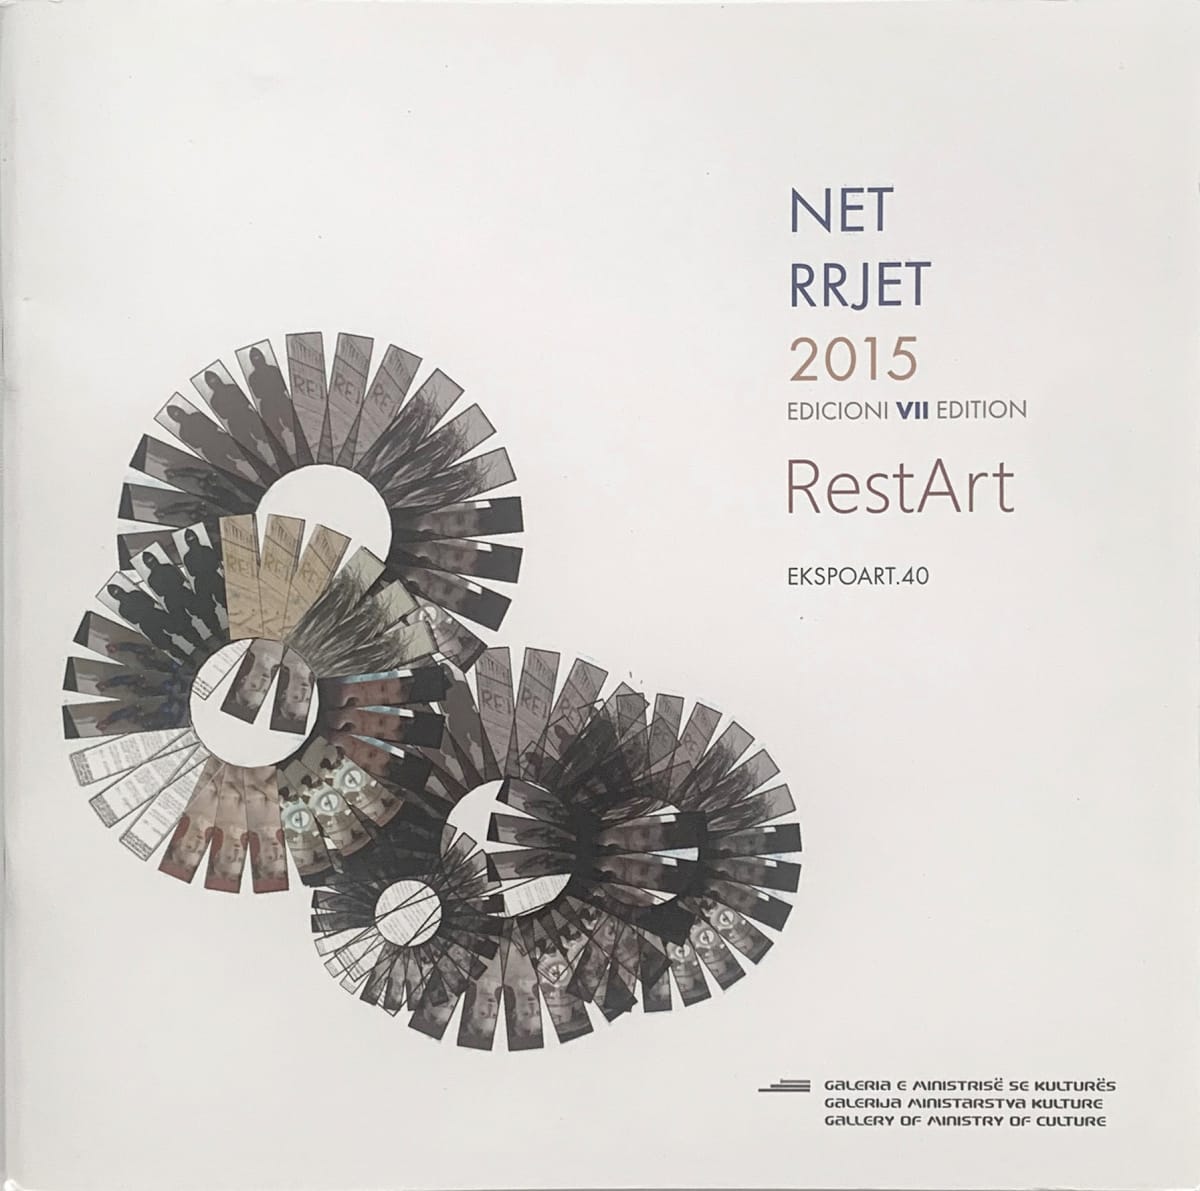 NET - RRJET 2015